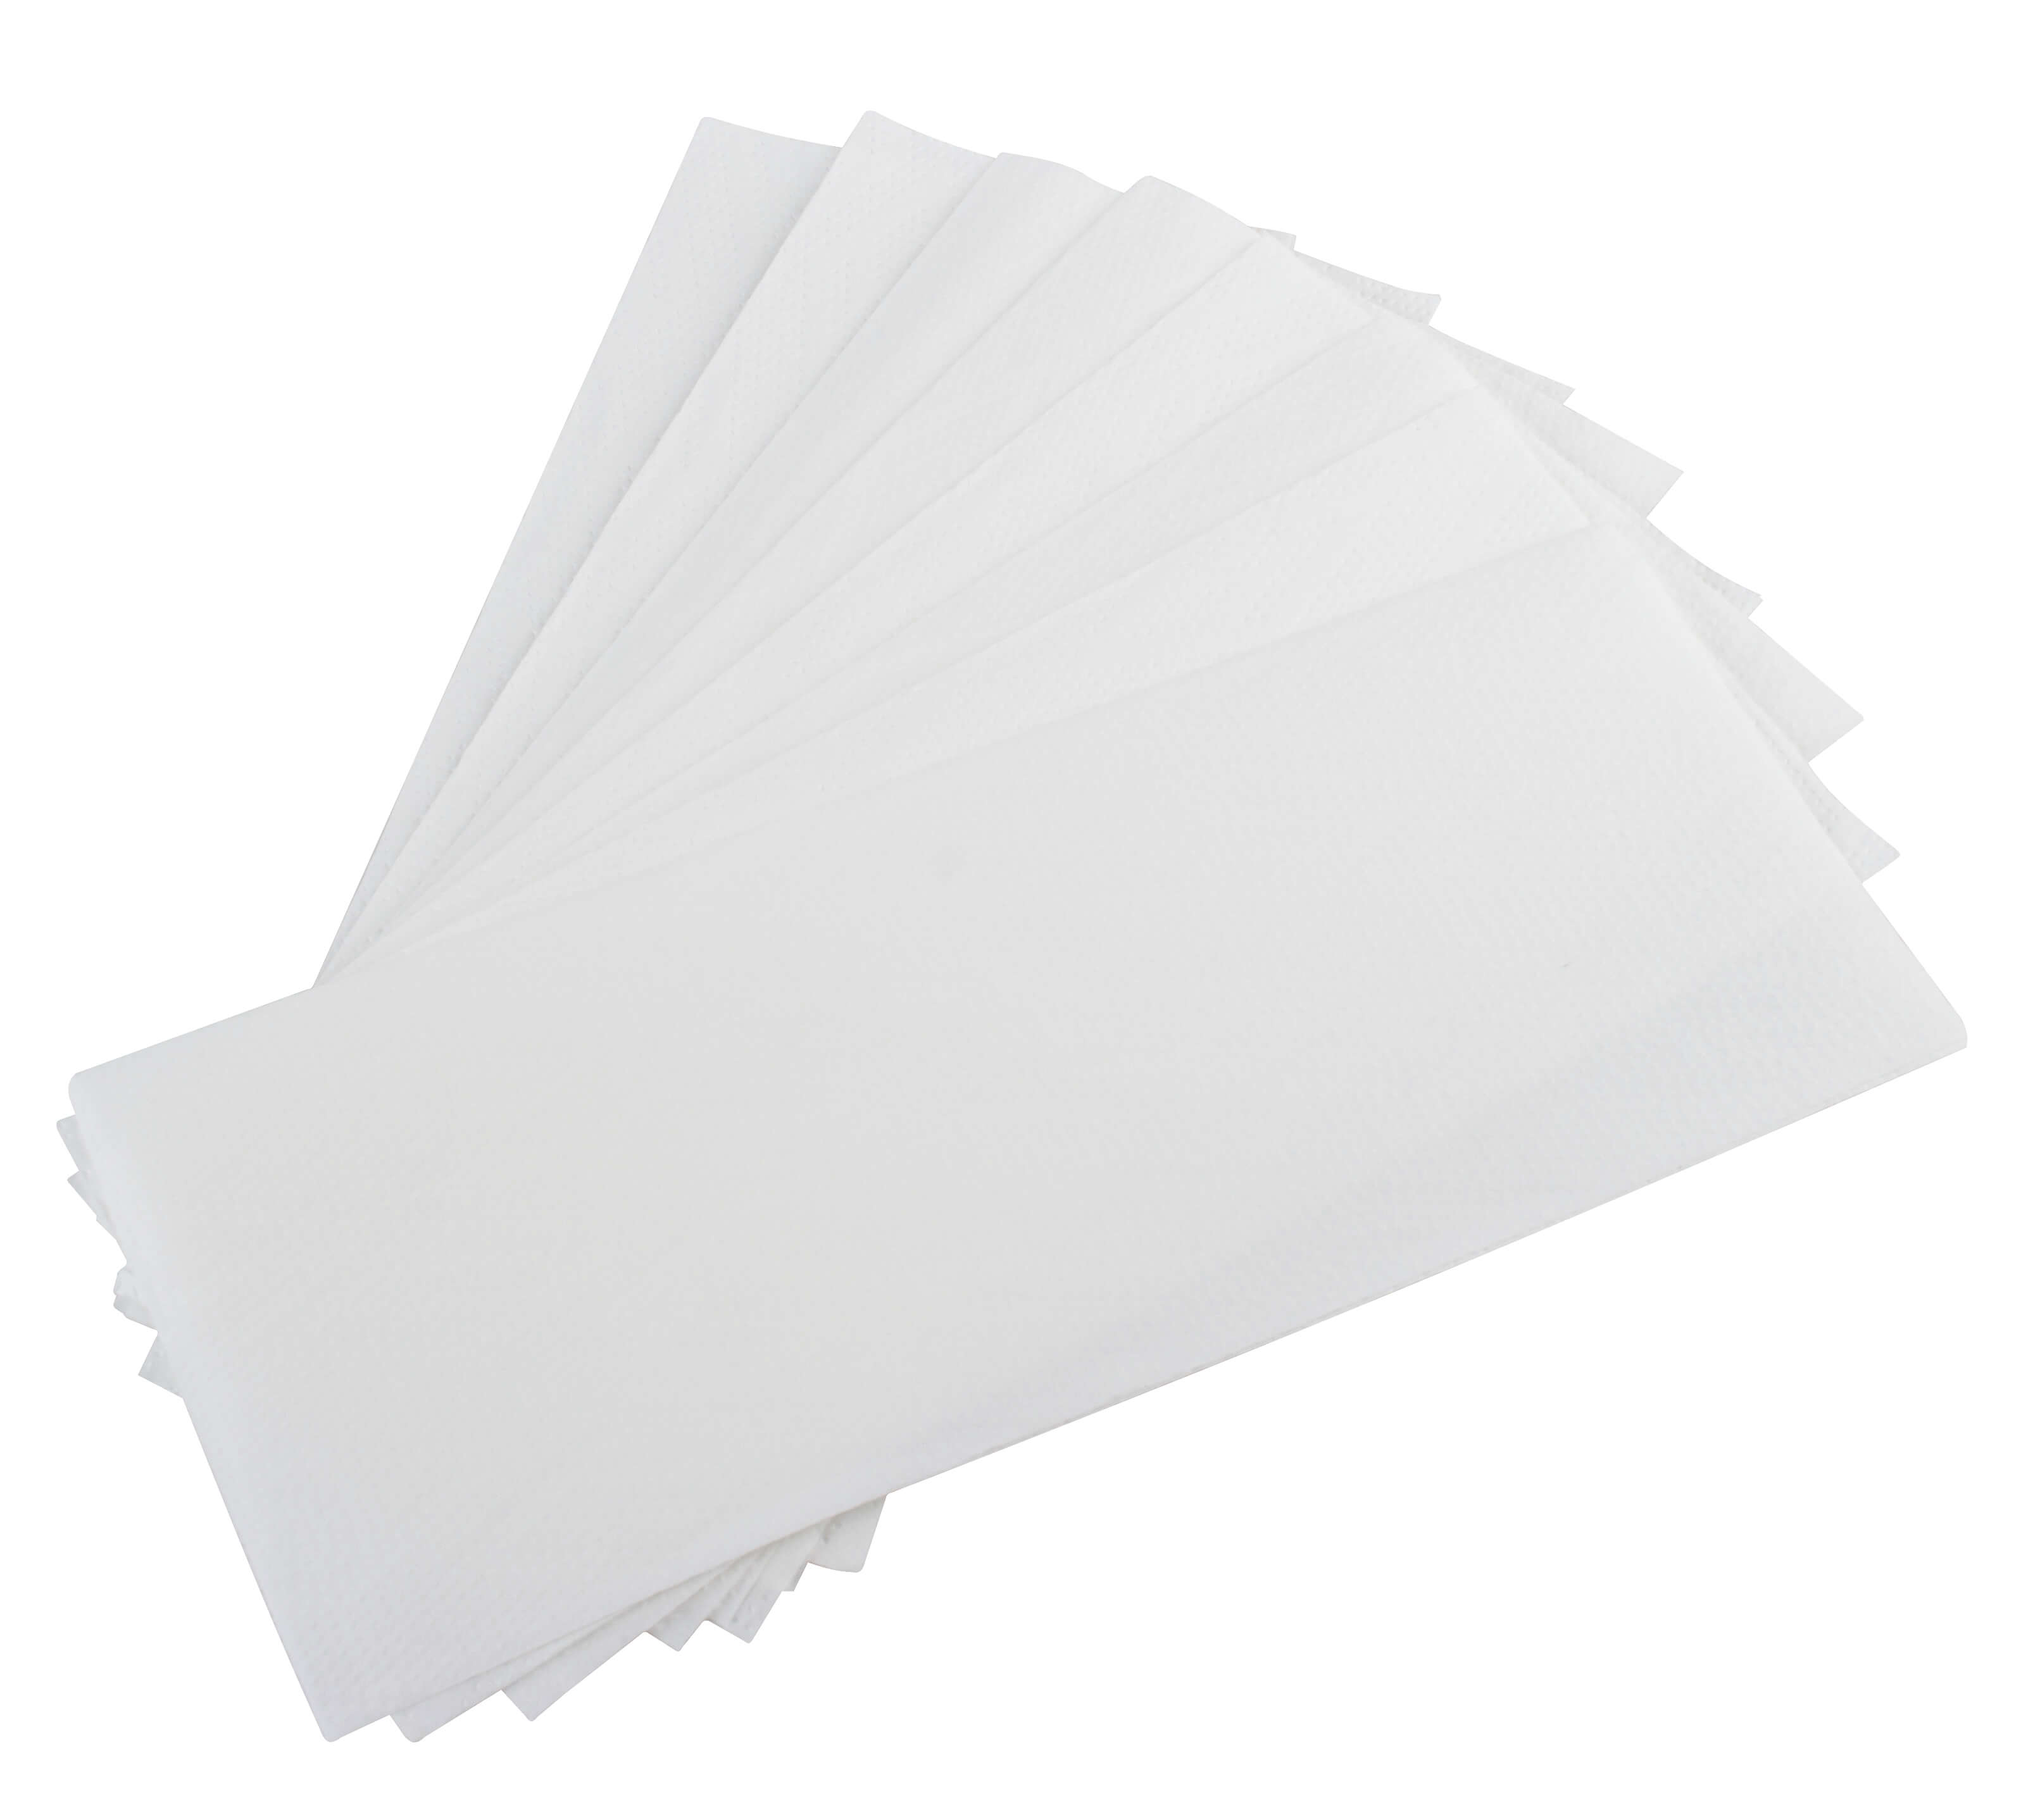 Papierhandtücher V-Falz, hochweiß, 2lg. - 25x21cm (3150 Stk.)